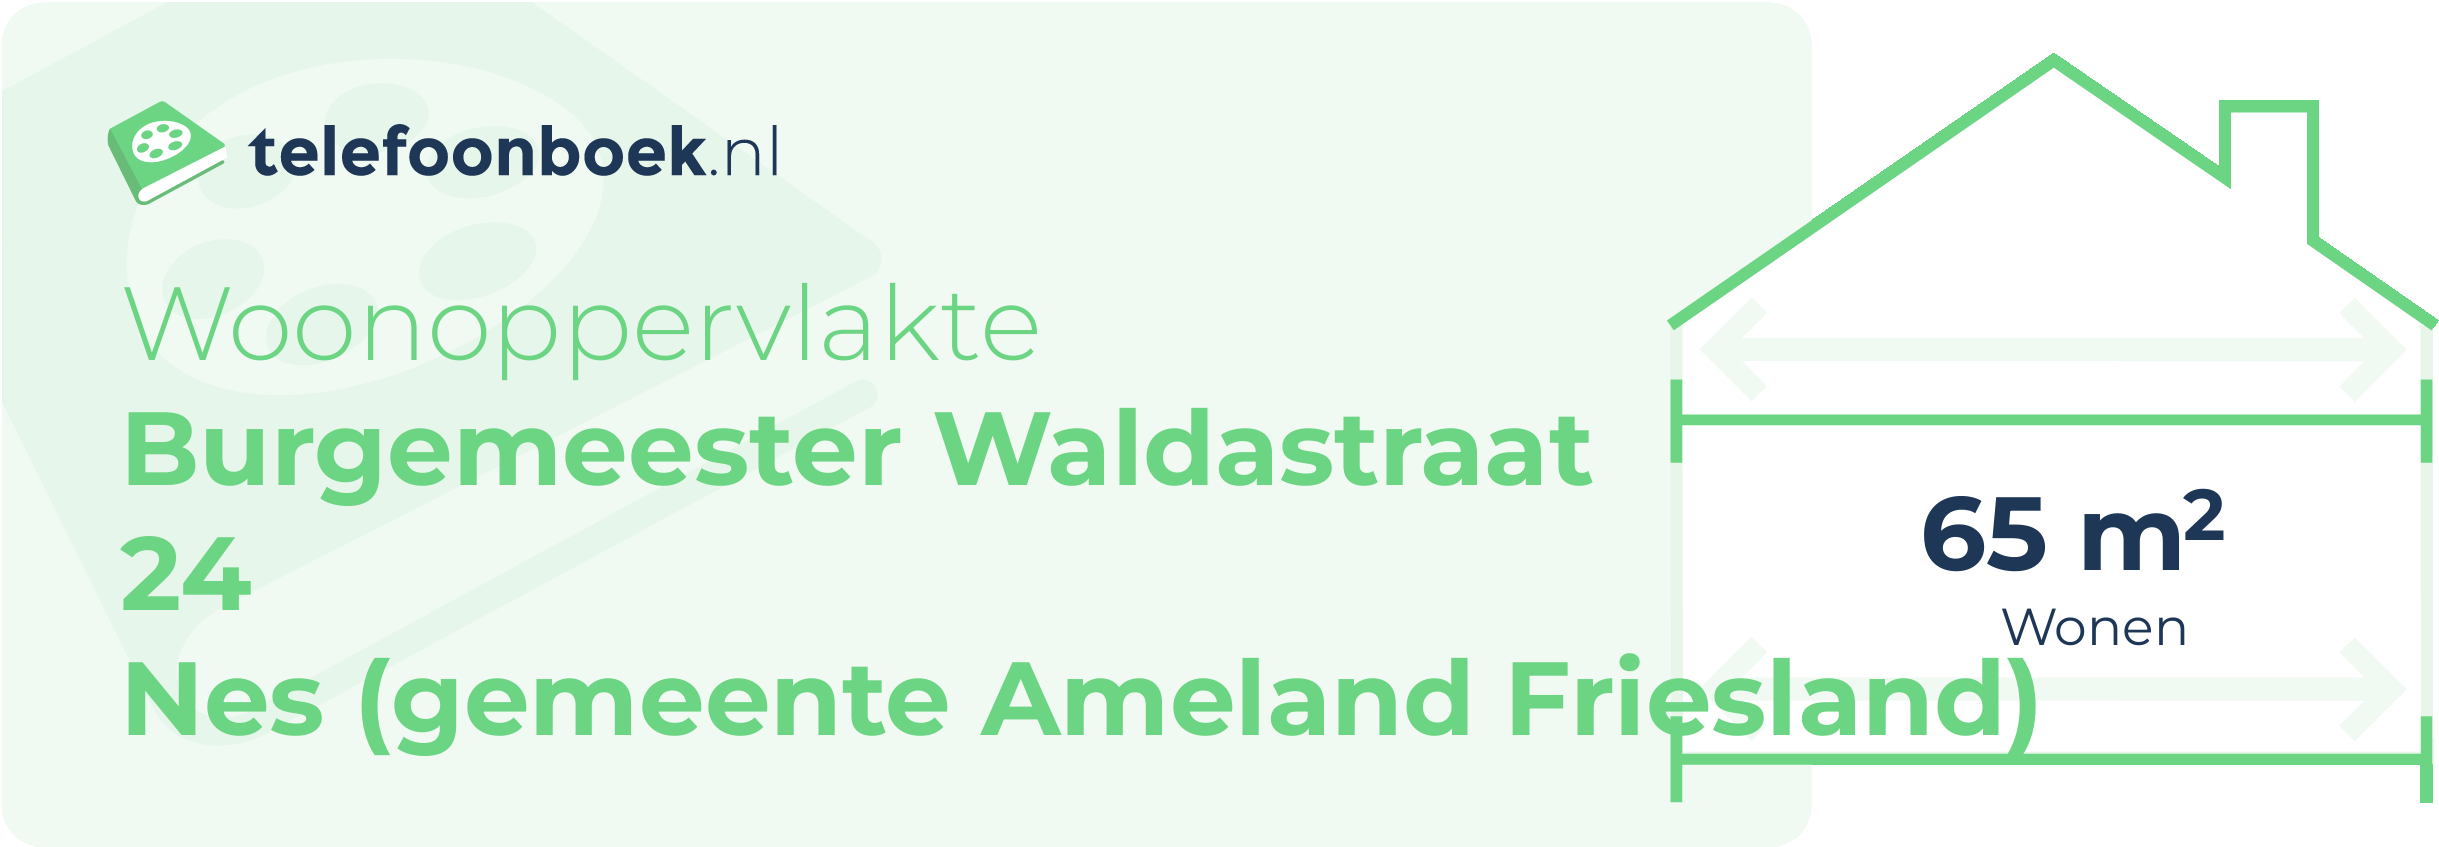 Woonoppervlakte Burgemeester Waldastraat 24 Nes (gemeente Ameland Friesland)